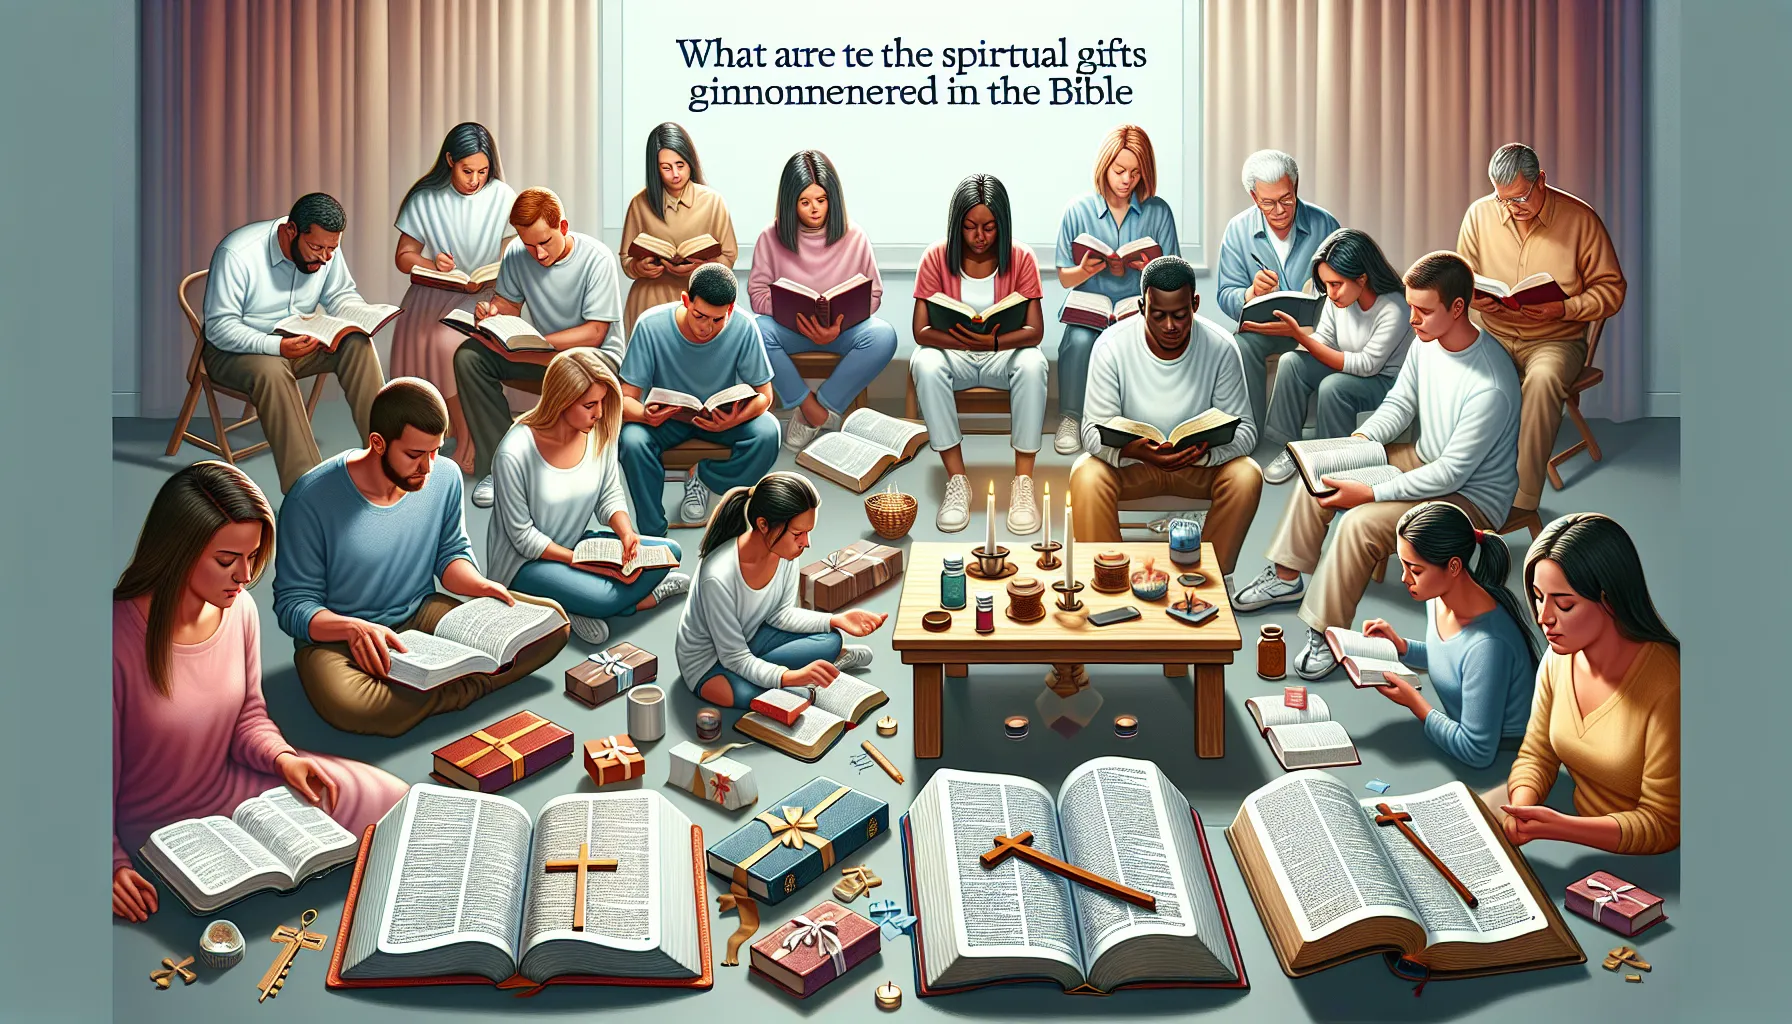 Imagen con el título del artículo 'Cuáles son los dones espirituales que se mencionan en la Biblia'